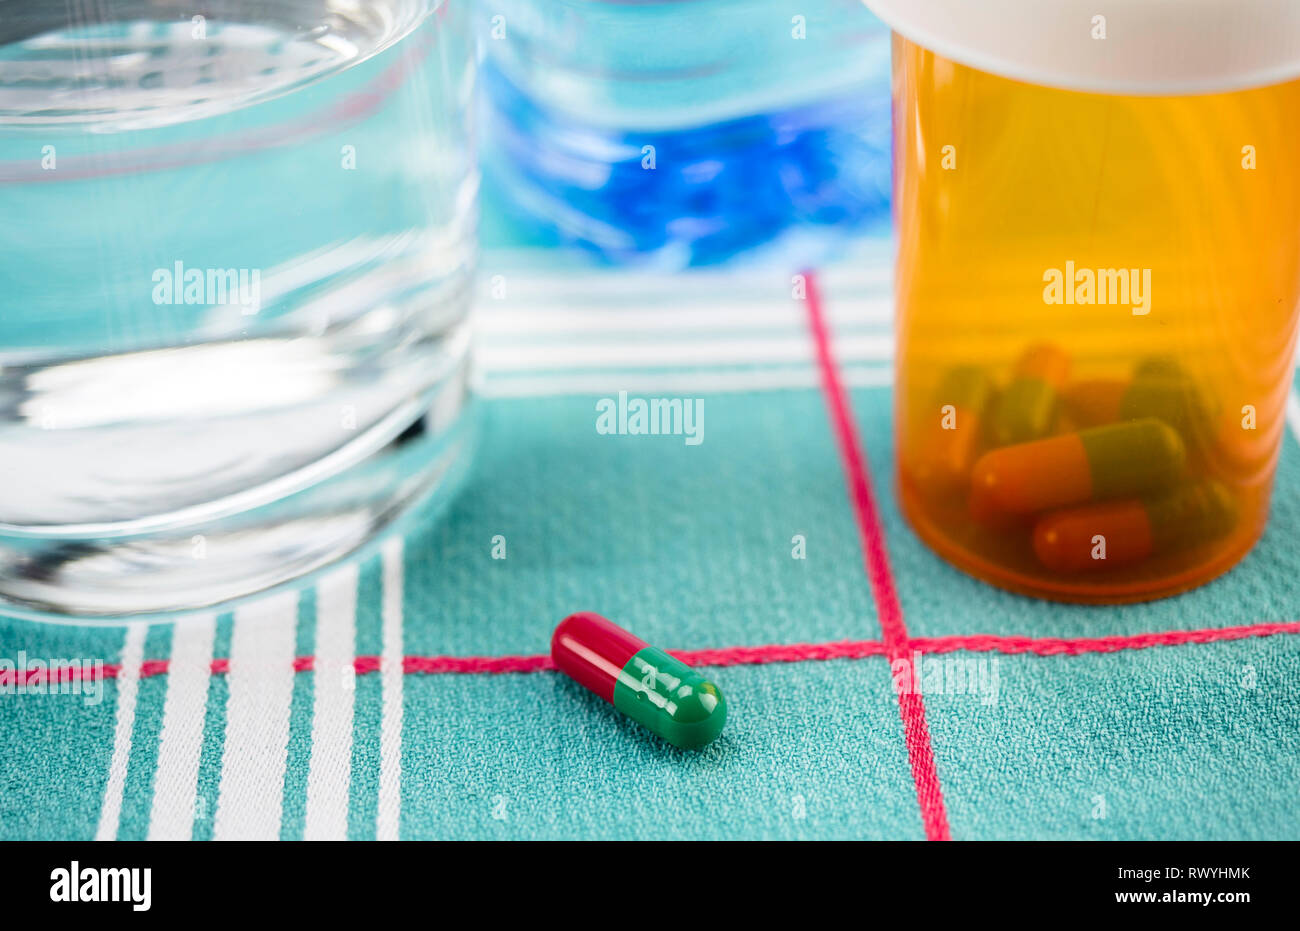 Medikamente während Frühstück, Kapseln neben einem Glas Wasser, konzeptionelle Bild, horizontale Zusammensetzung Stockfoto